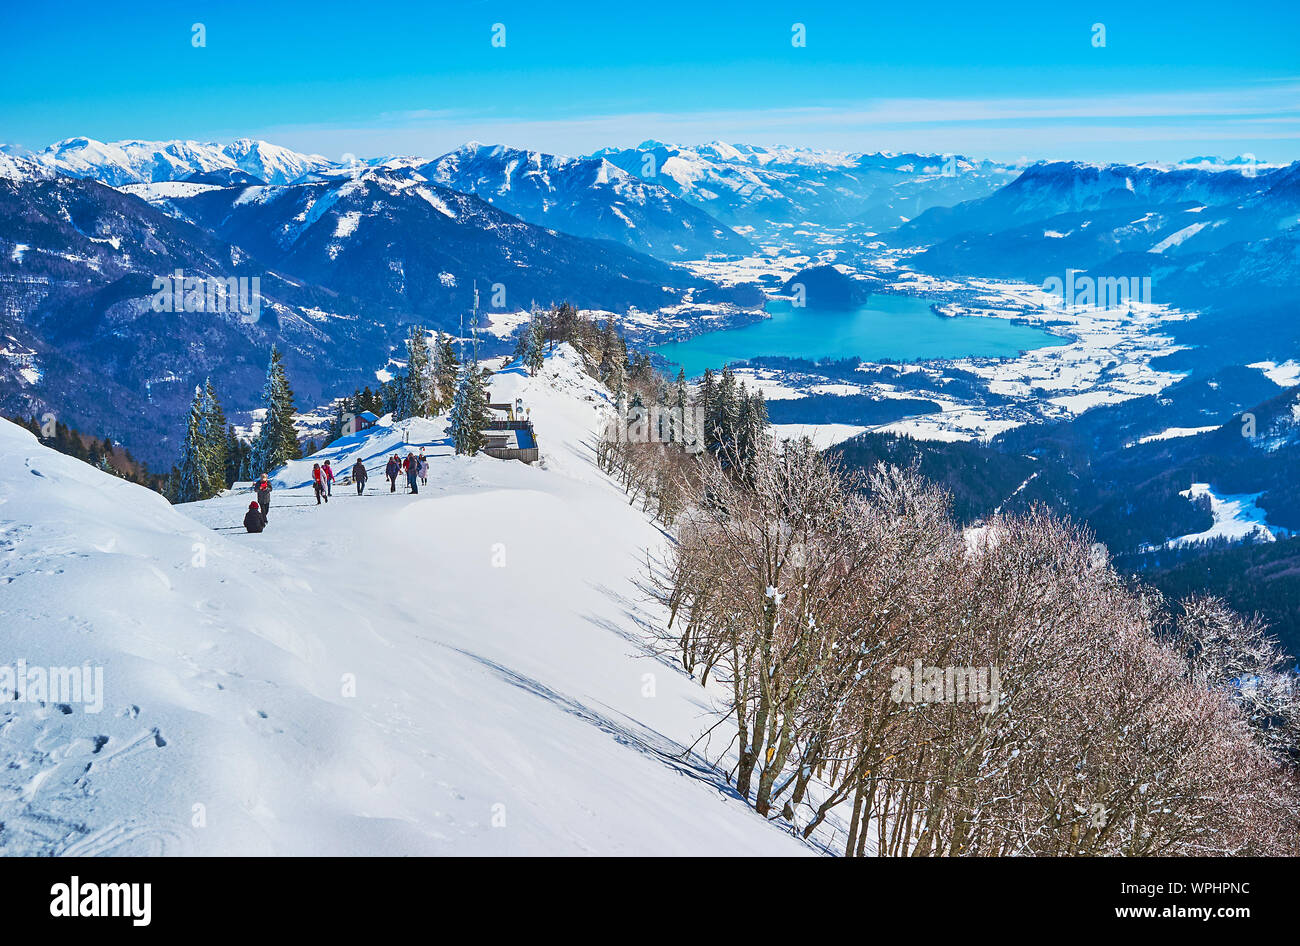 Gli sportivi e i turisti vanno in salita alla cima del monte Zwolferhorn per osservare il paesaggio alpino e godetevi il panorama invernale del Salzkammergut con Wolfg Foto Stock